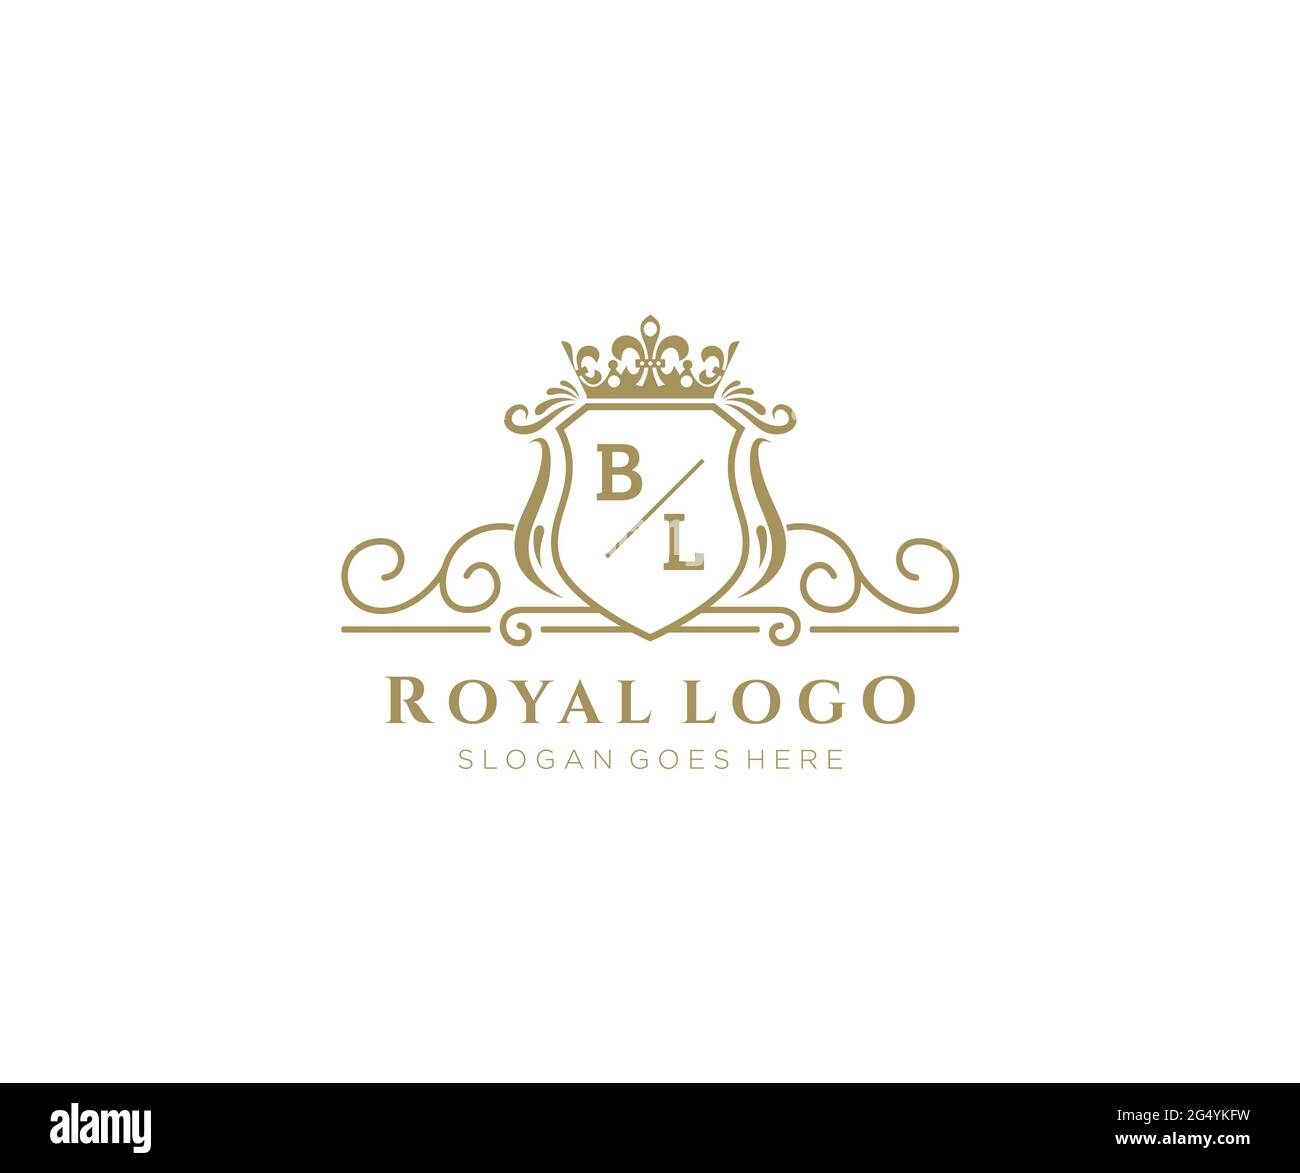 BL Buchstabe Luxurious Brand Logo Template, für Restaurant, Royalty, Boutique, Cafe, Hotel, Wappentisch, Schmuck, Mode und andere Vektorgrafik. Stock Vektor